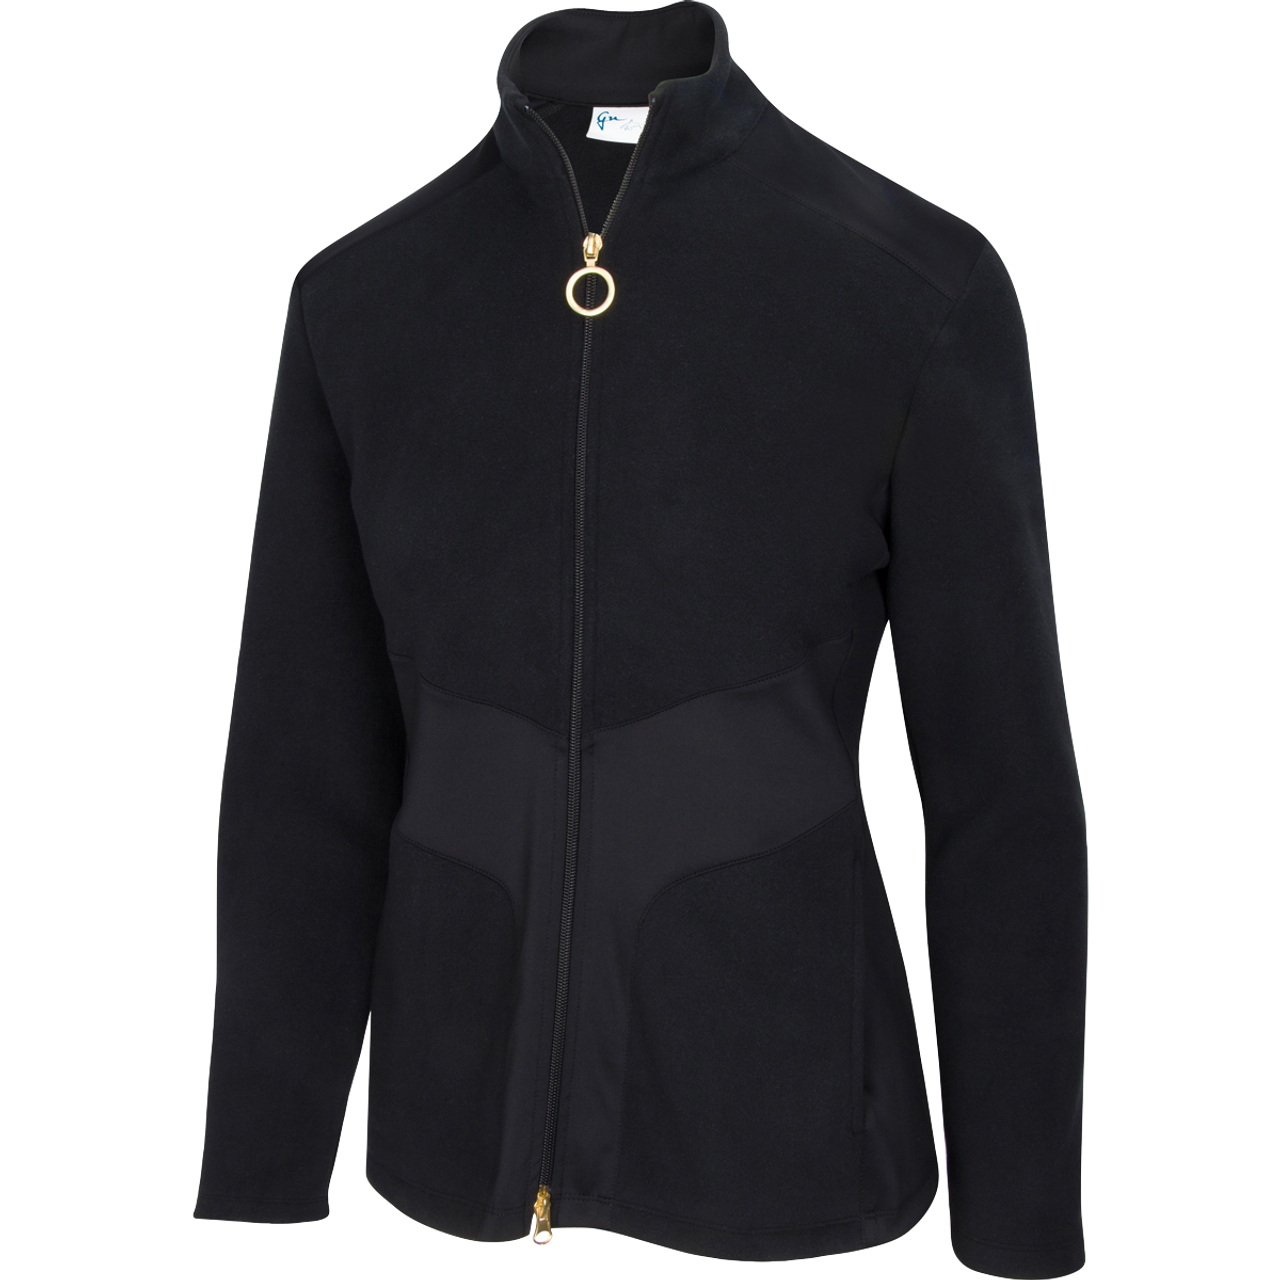 Greg Norman Women’s Bonded Fleece Jacket (US Size)